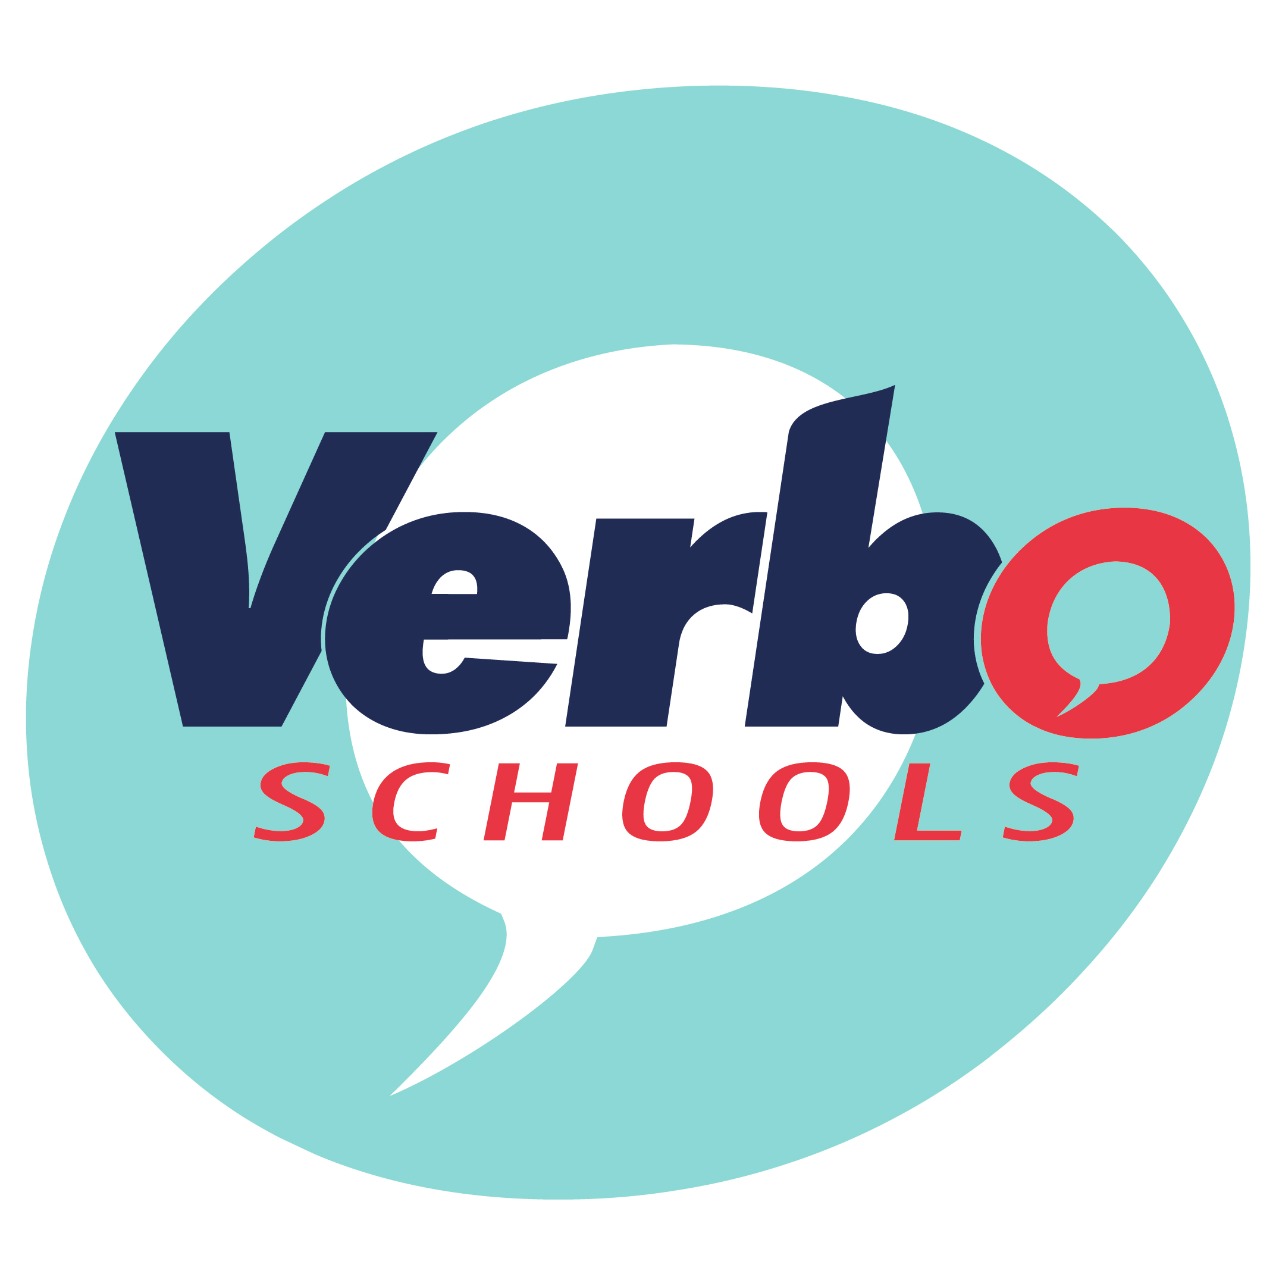 VERBO SCHOOLS